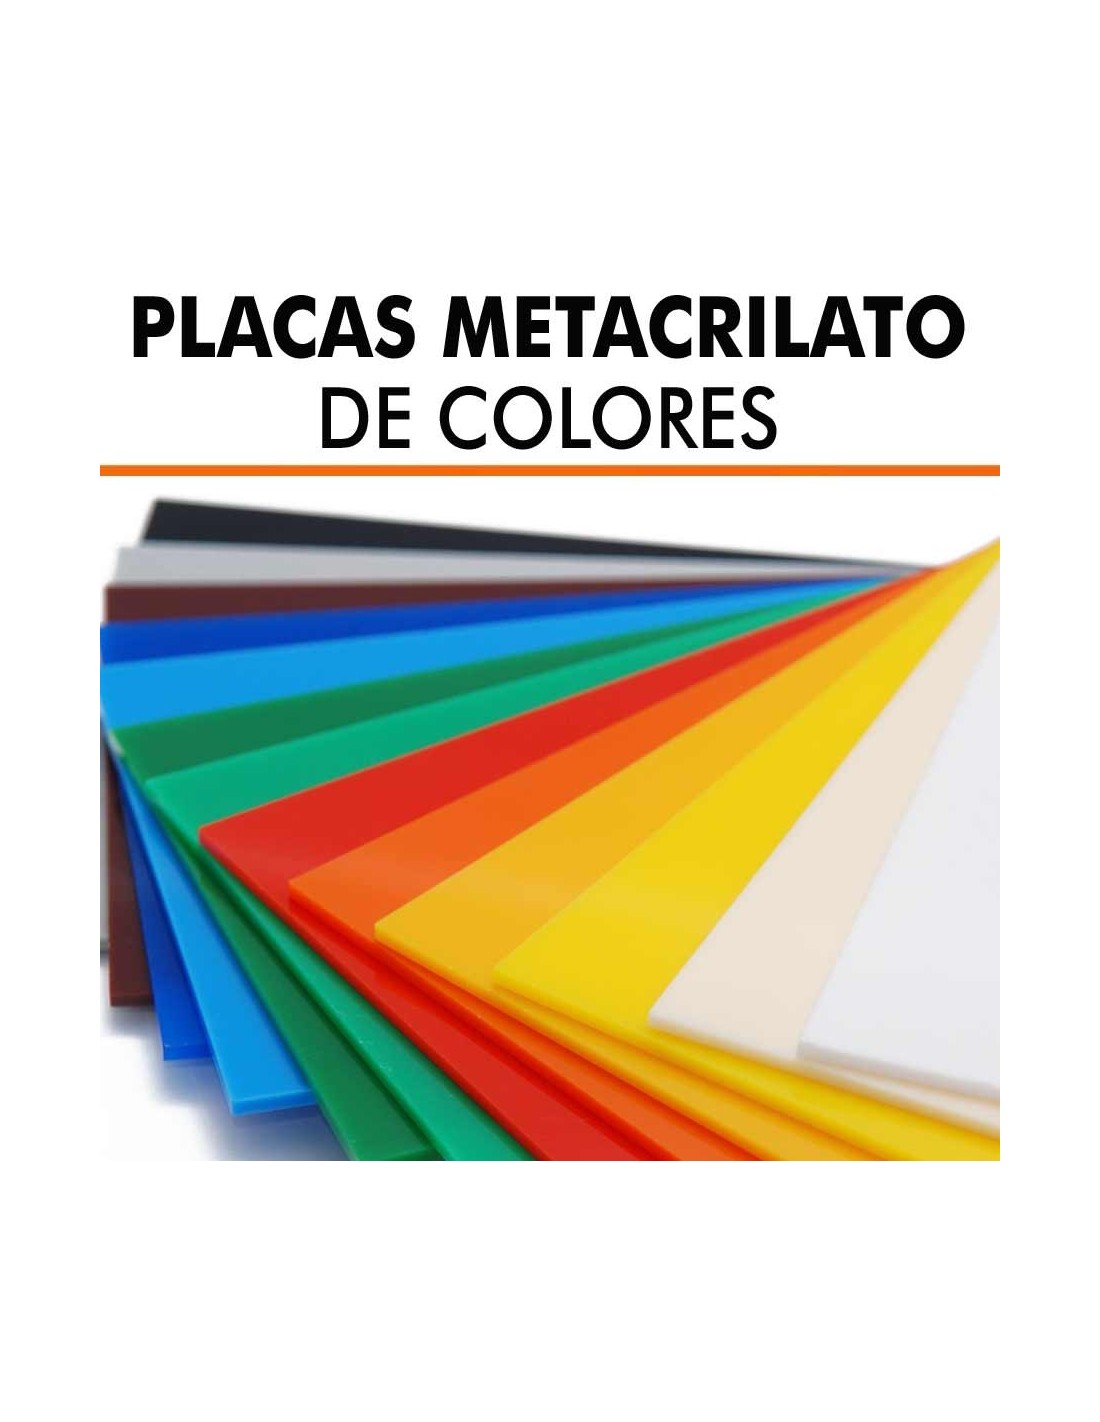 Placa de metacrilato de colores, precio de metacrilato de color a